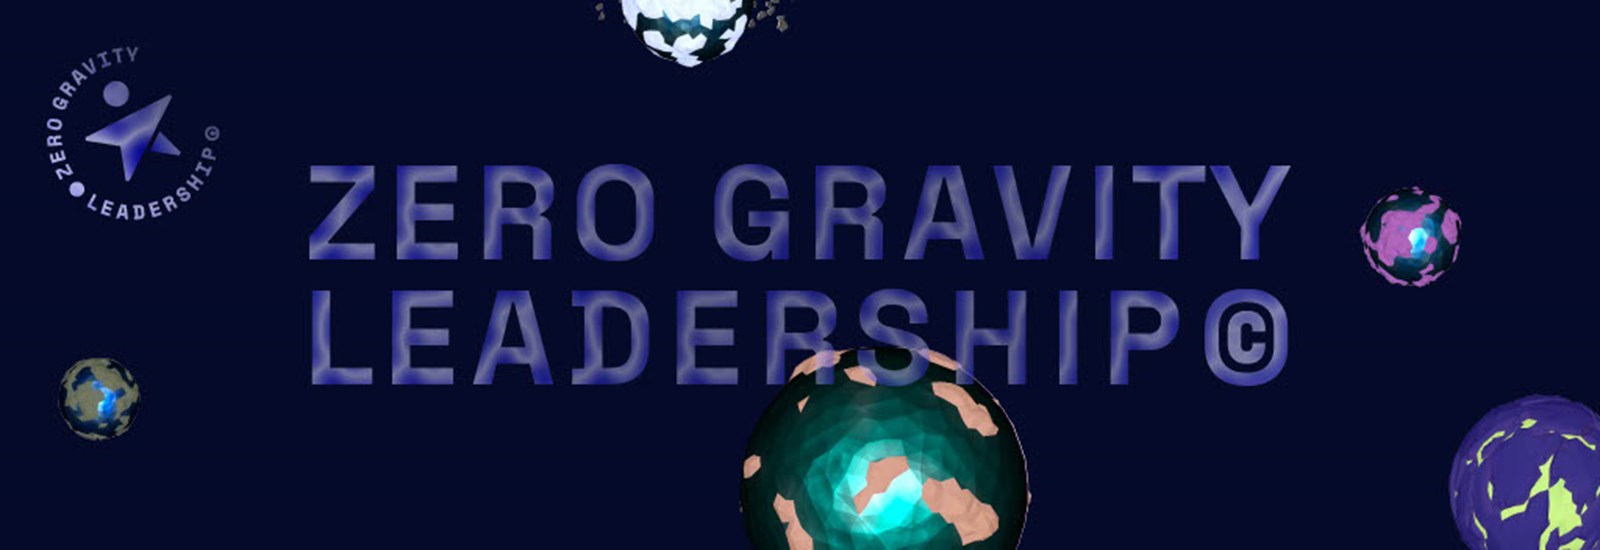 Zero Gravity Leadership ®